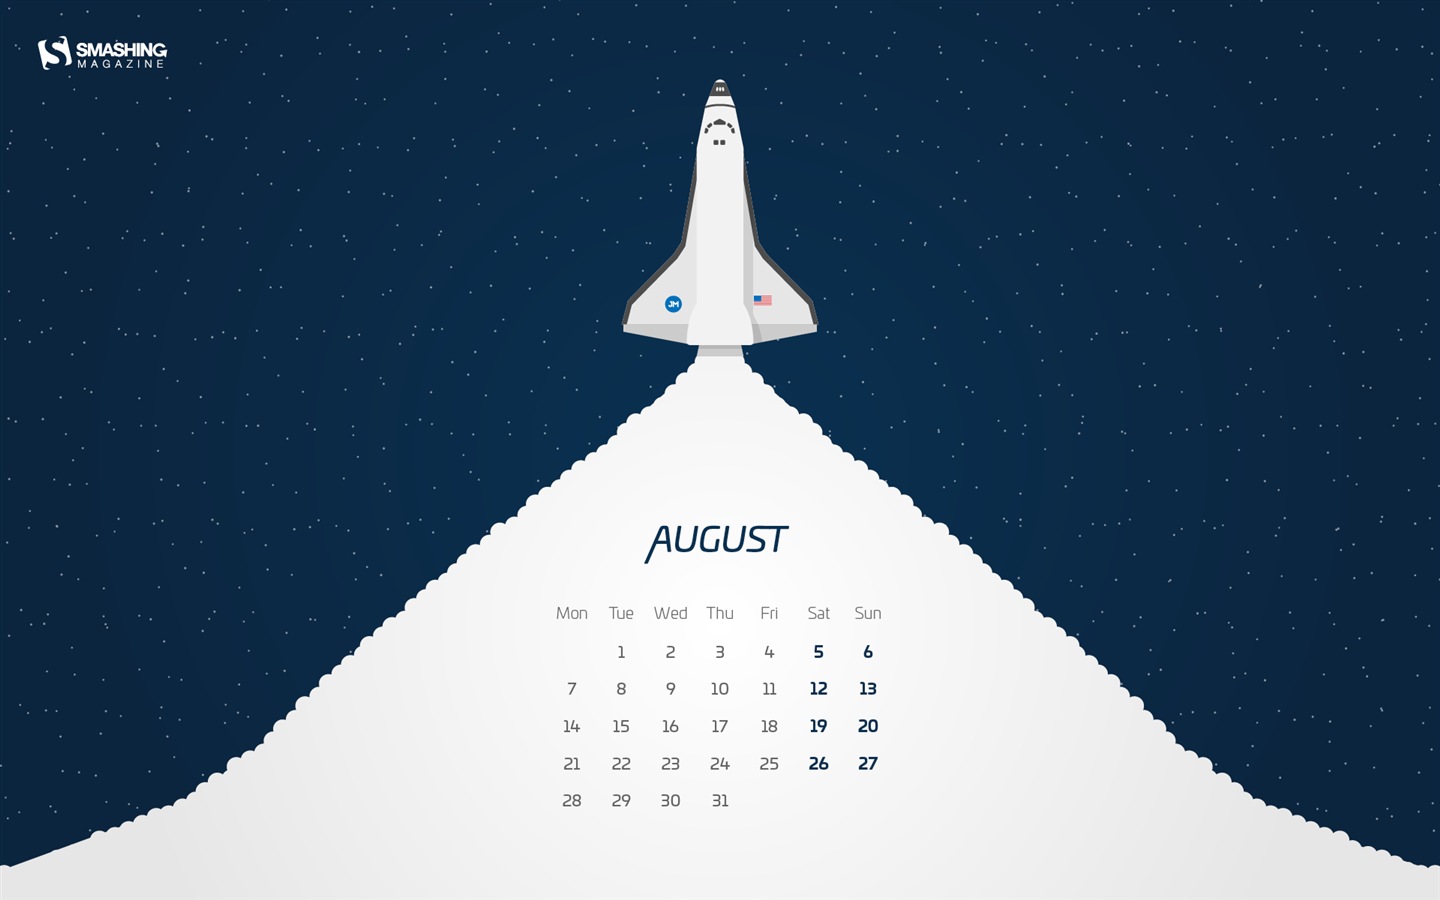 August 2017 calendar wallpaper #13 - 1440x900